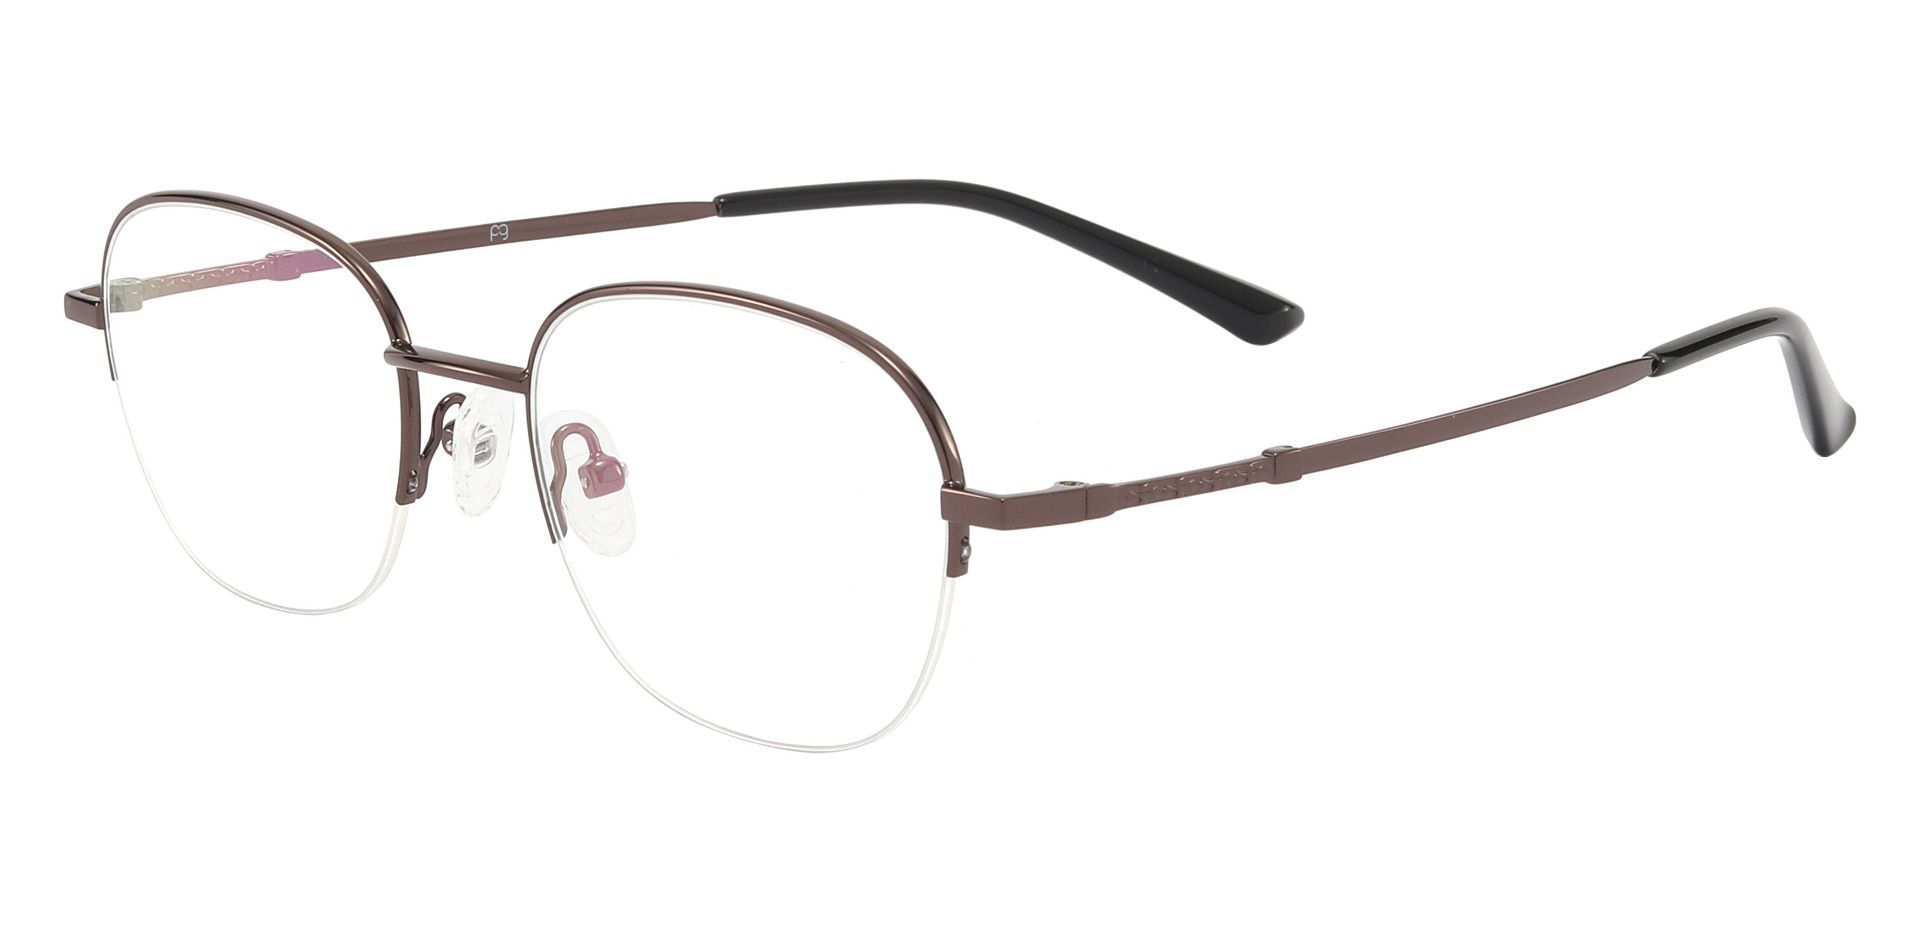 Rochester Oval Non-Rx Glasses - Brown